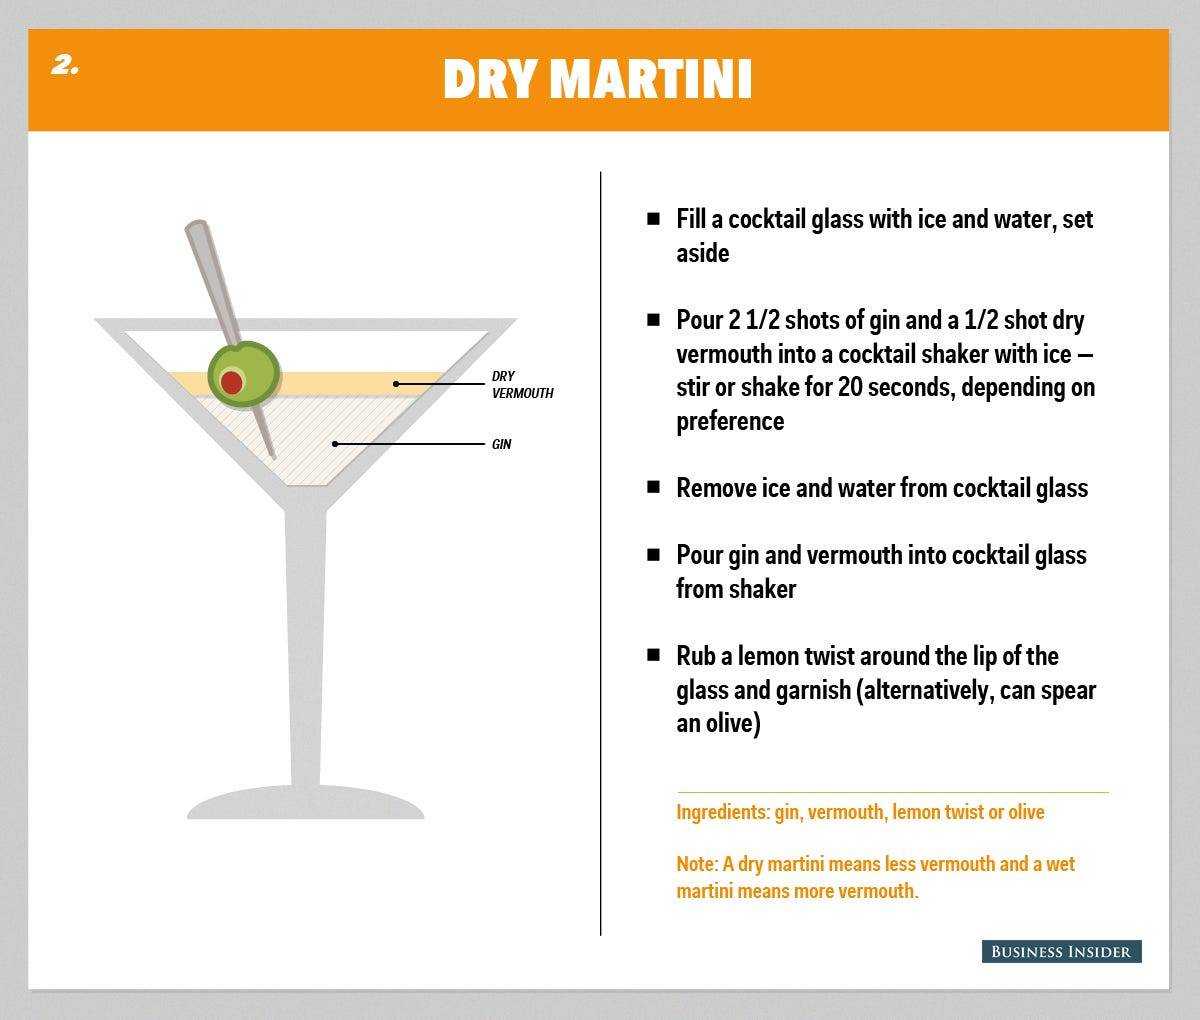 Как правильно разбавить и с чем употреблять мартини?